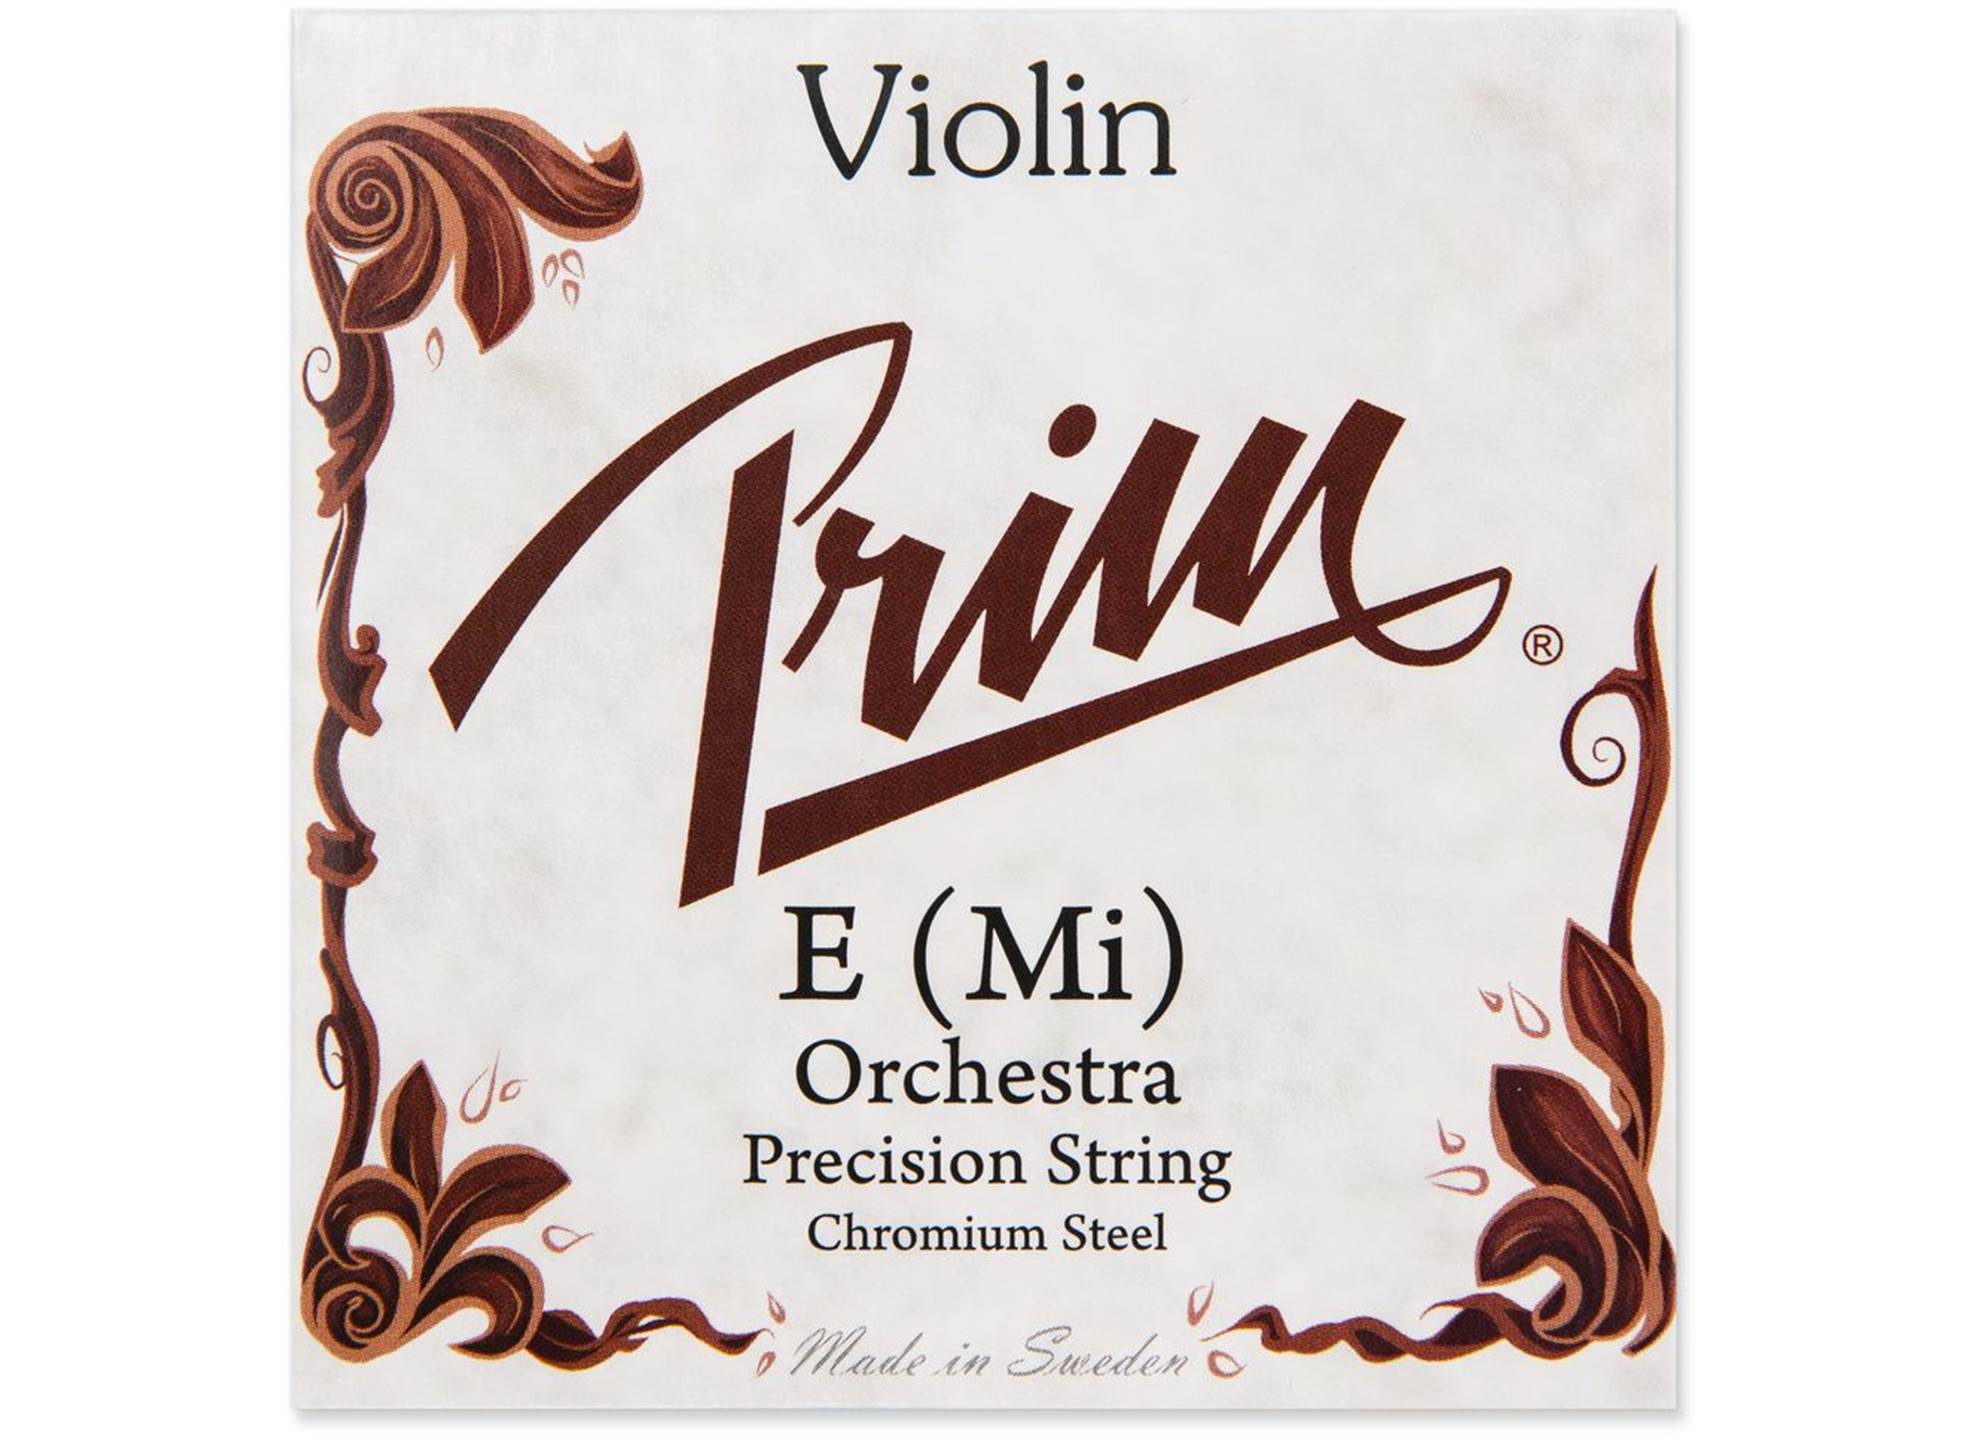 Violin E Orchestra